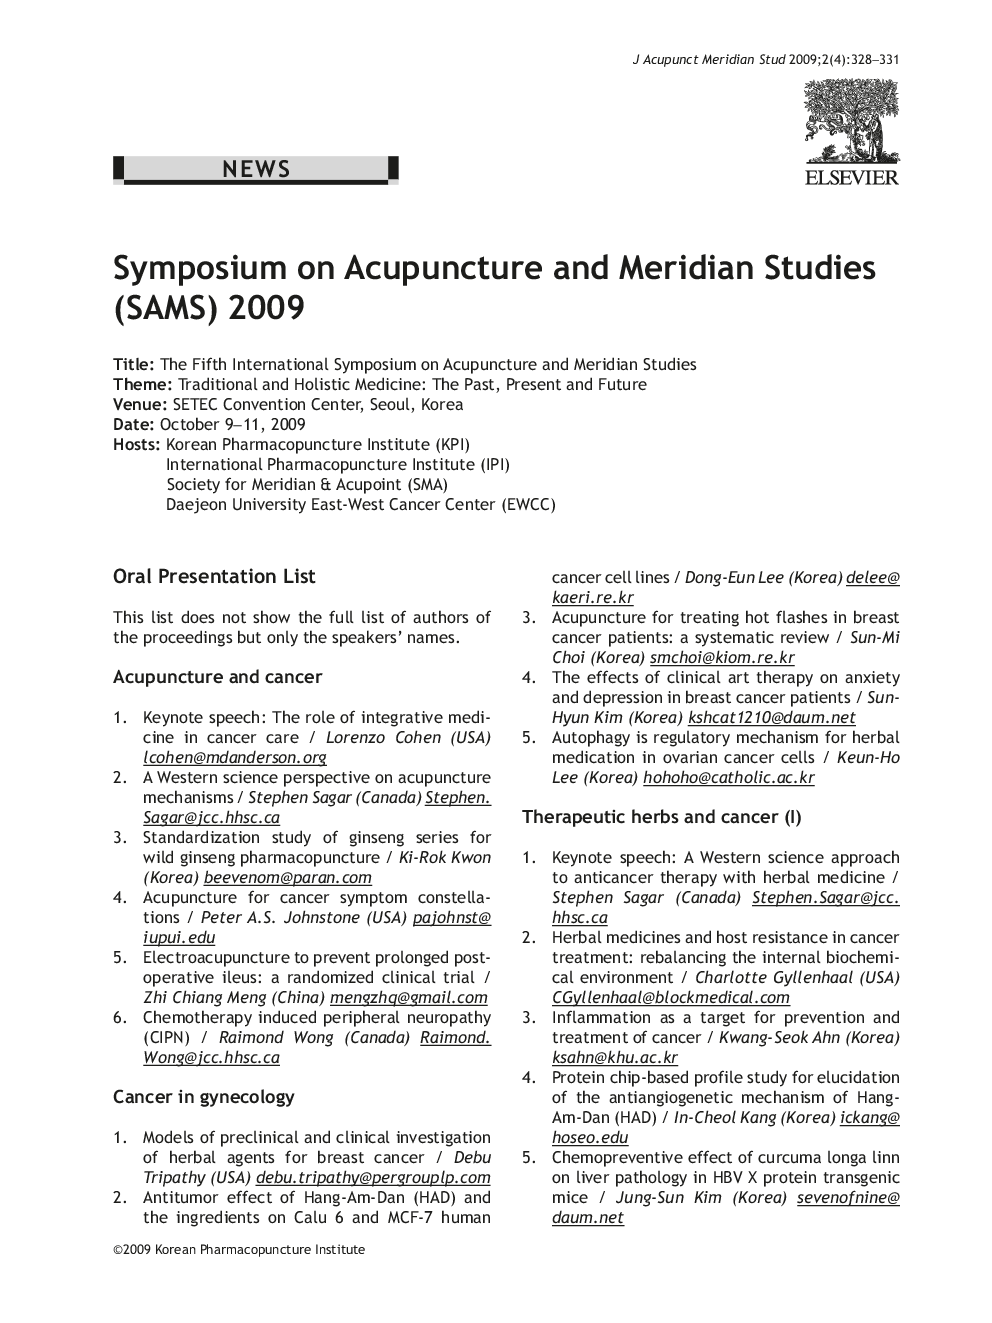 Symposium on Acupuncture and Meridian Studies (SAMS) 2009